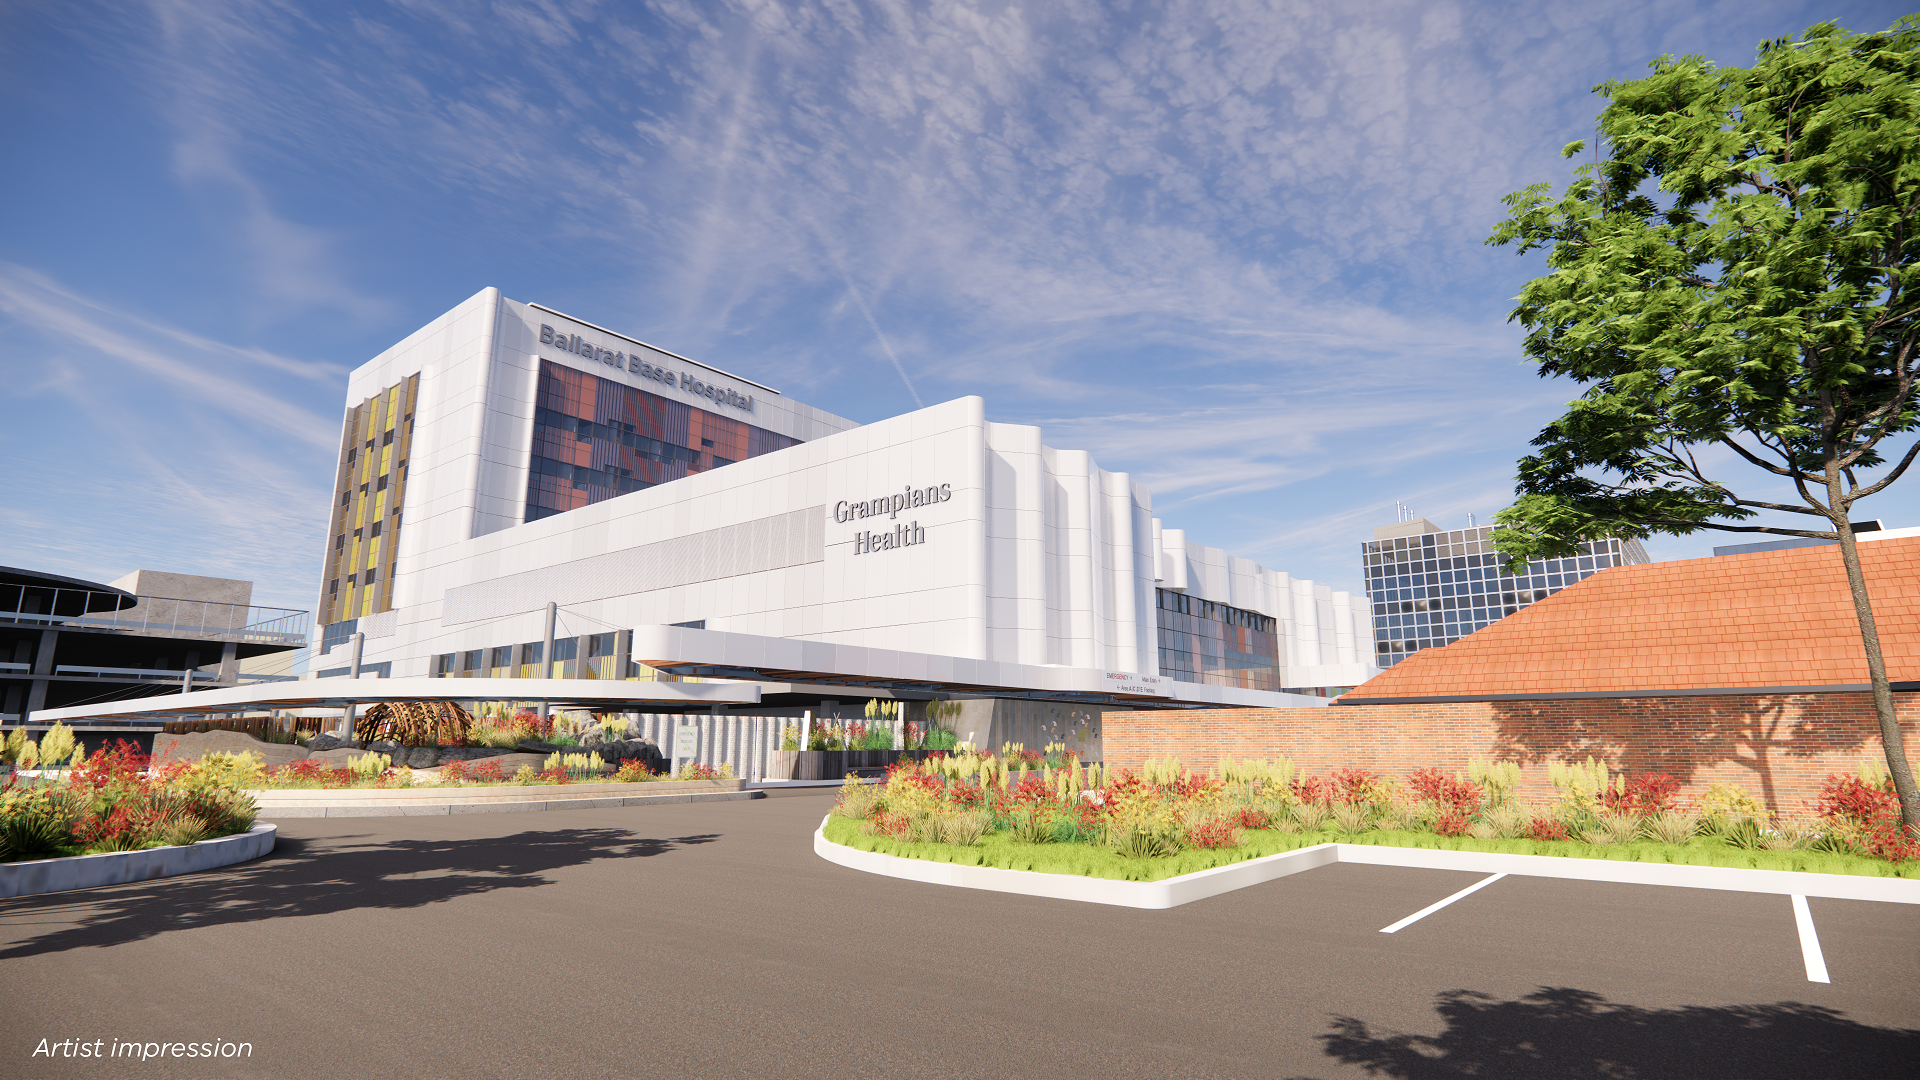 巴拉瑞特基地医院重建项目的最新设计公之于众